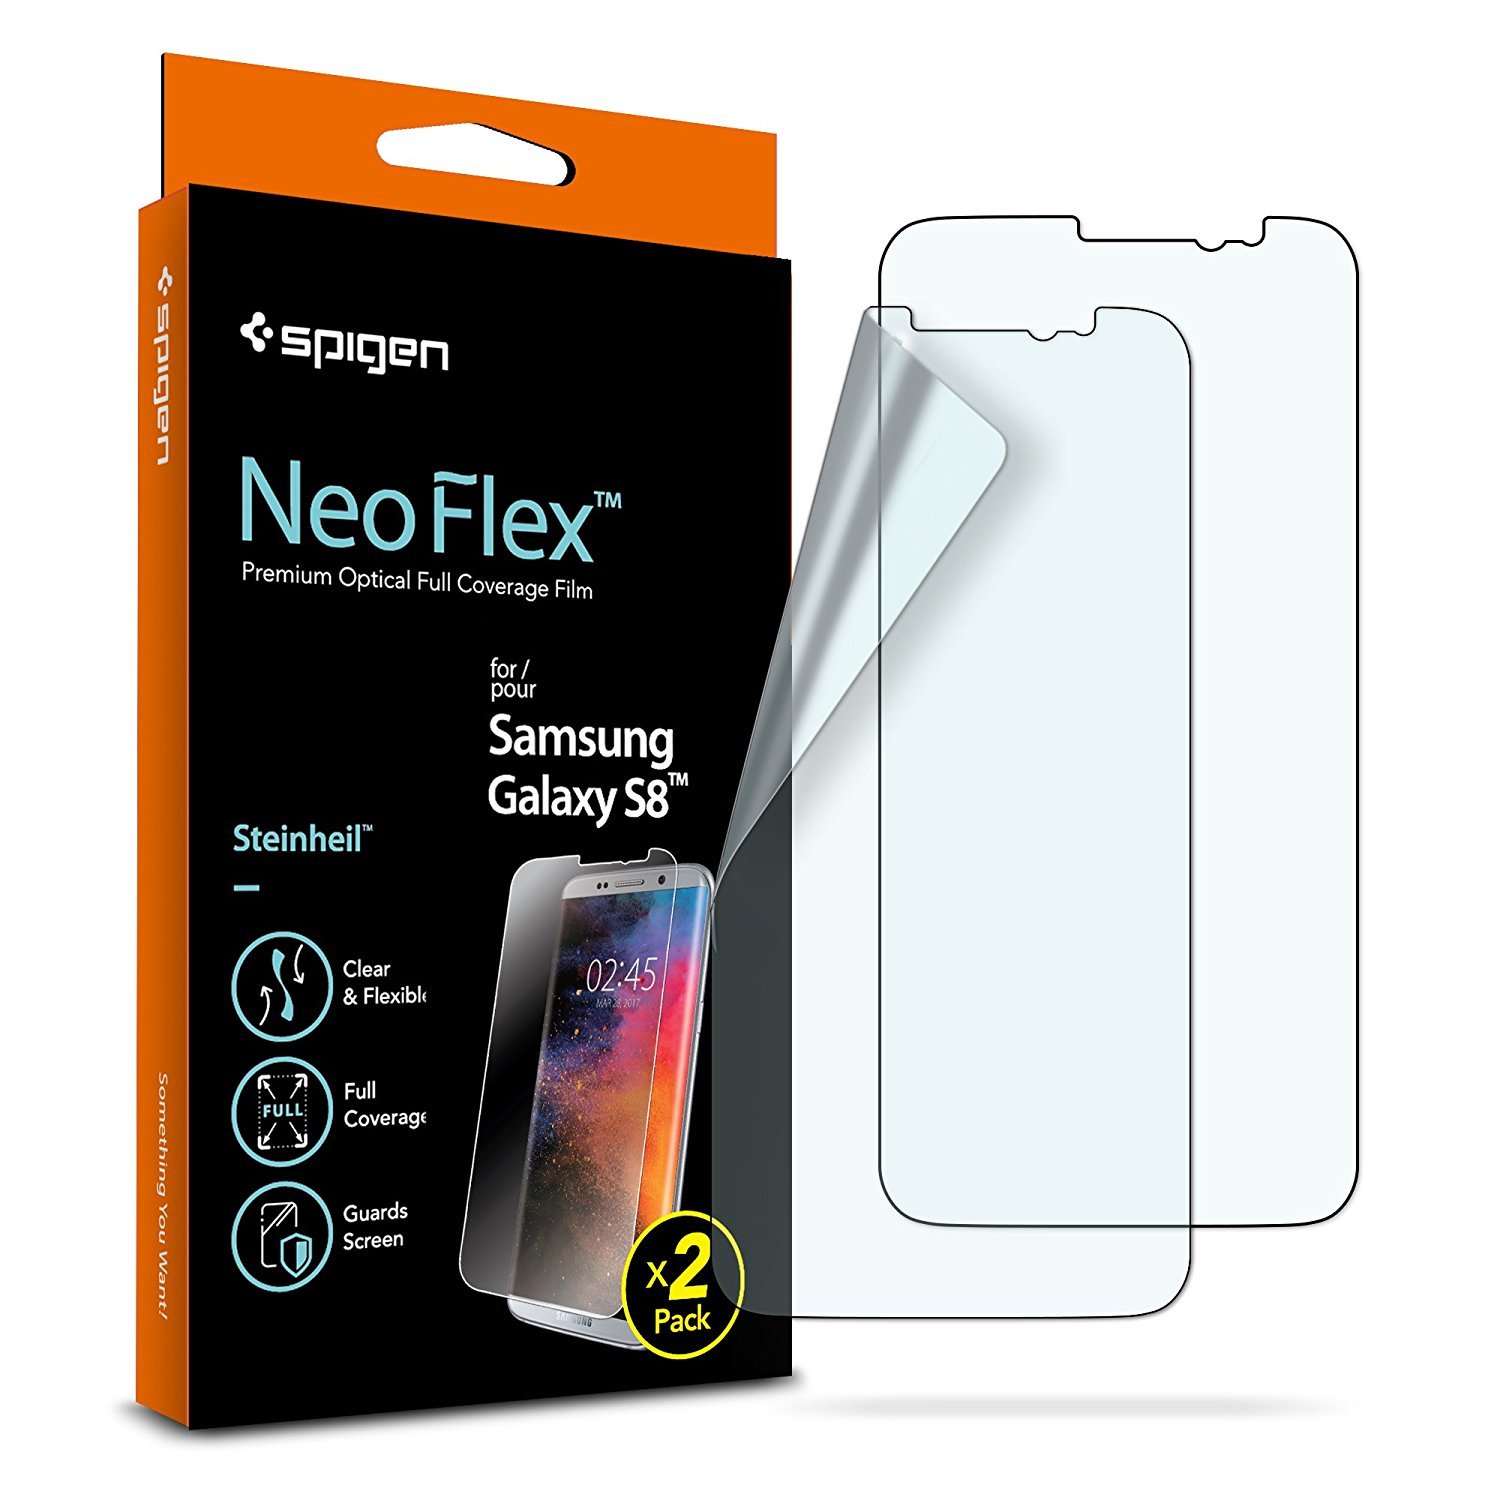 Spigen NeoFlex screen protectors